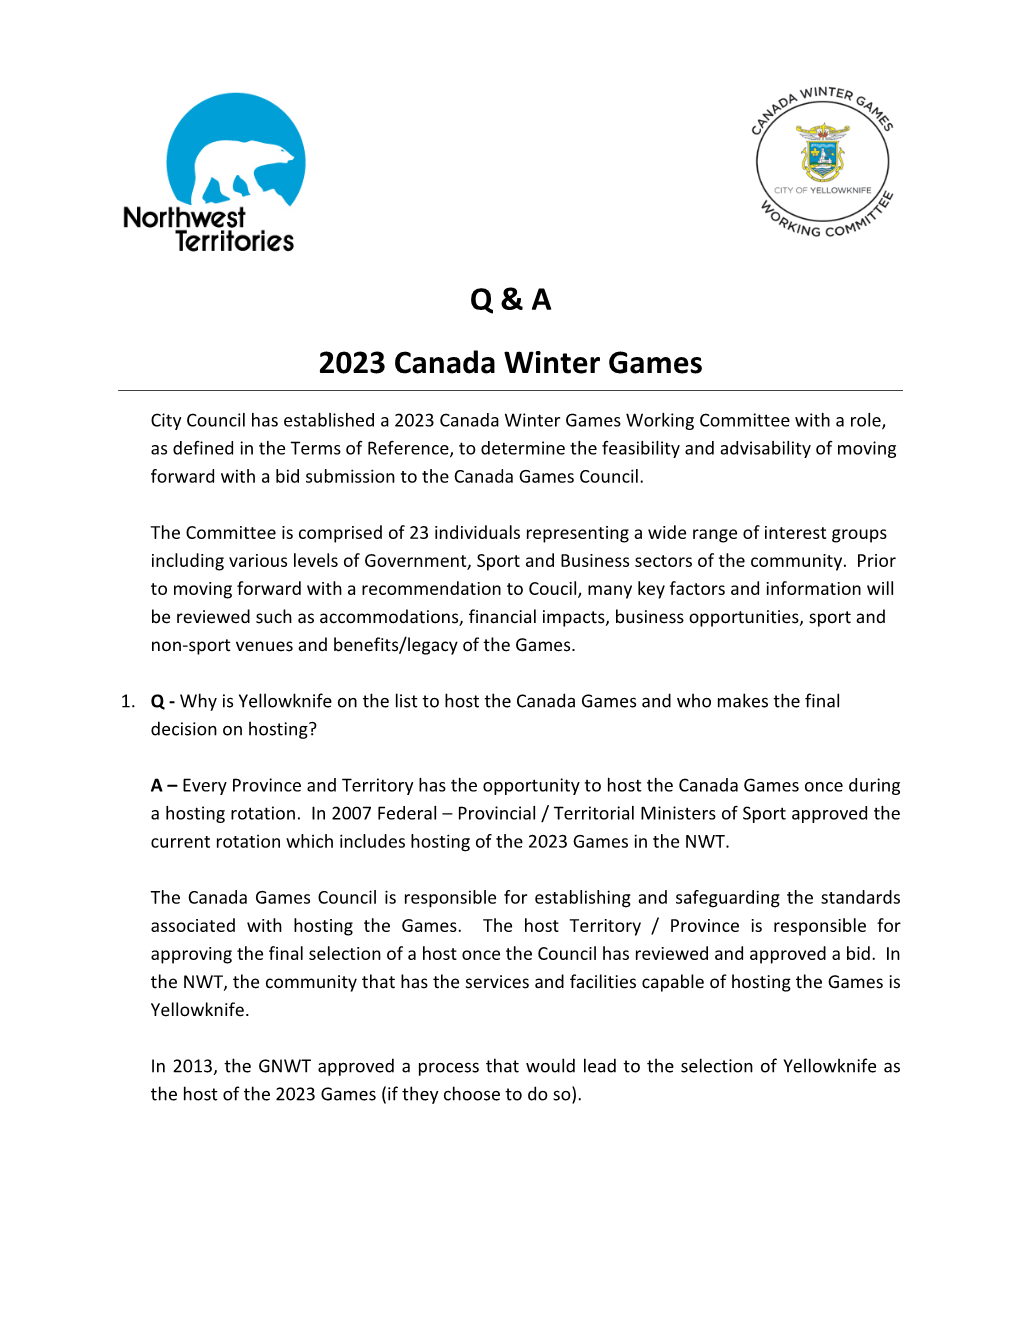 Q & a 2023 Canada Winter Games